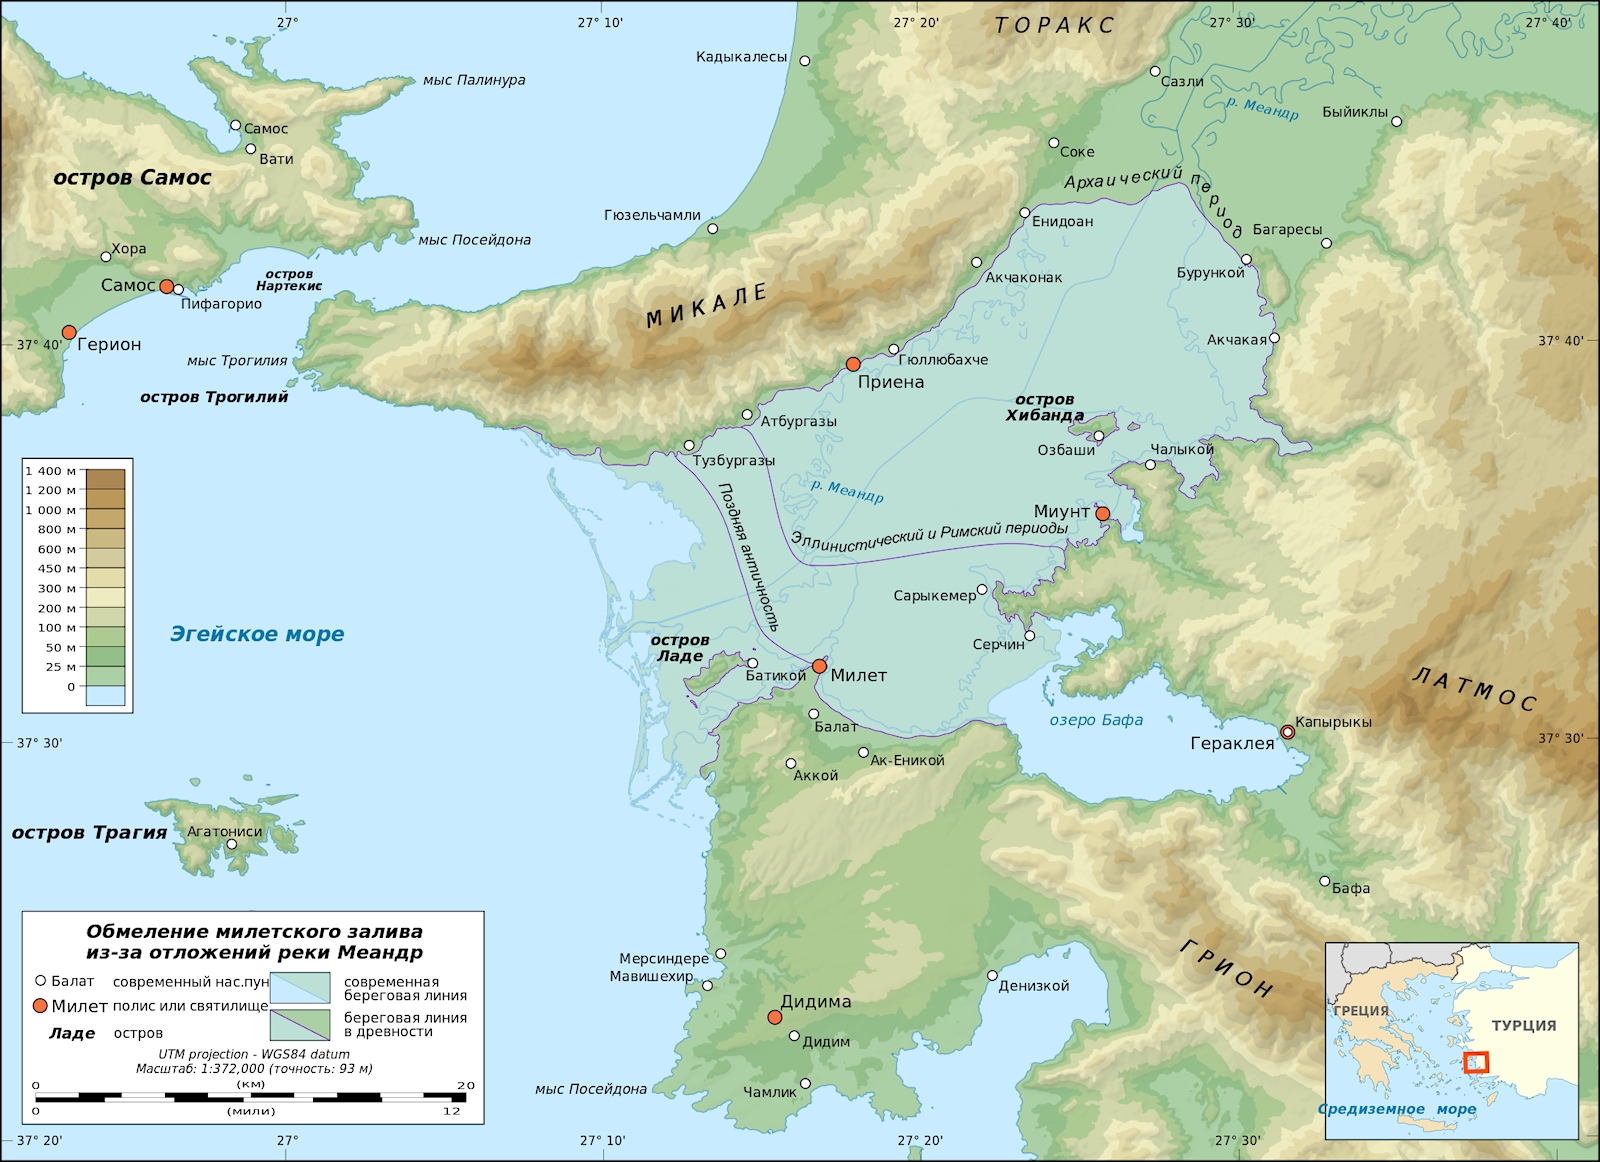 Реки И Моря Древней Греции